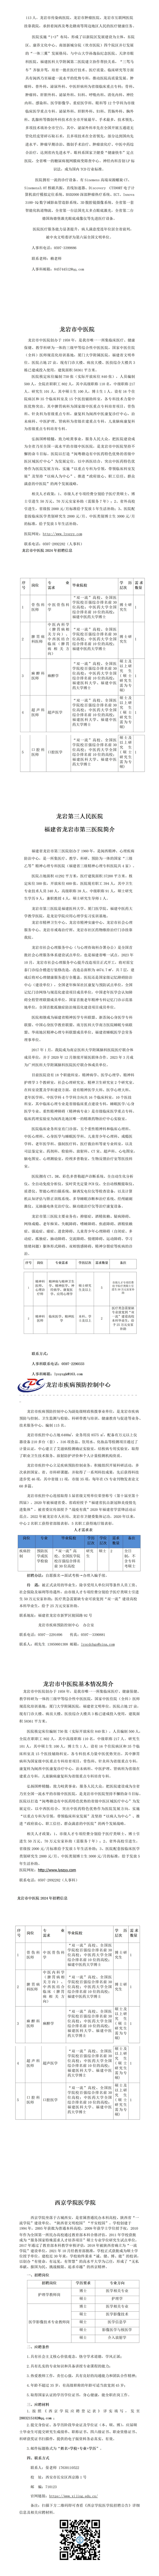 11月份宣传文件——西安交通大学(1)_01(3).jpg